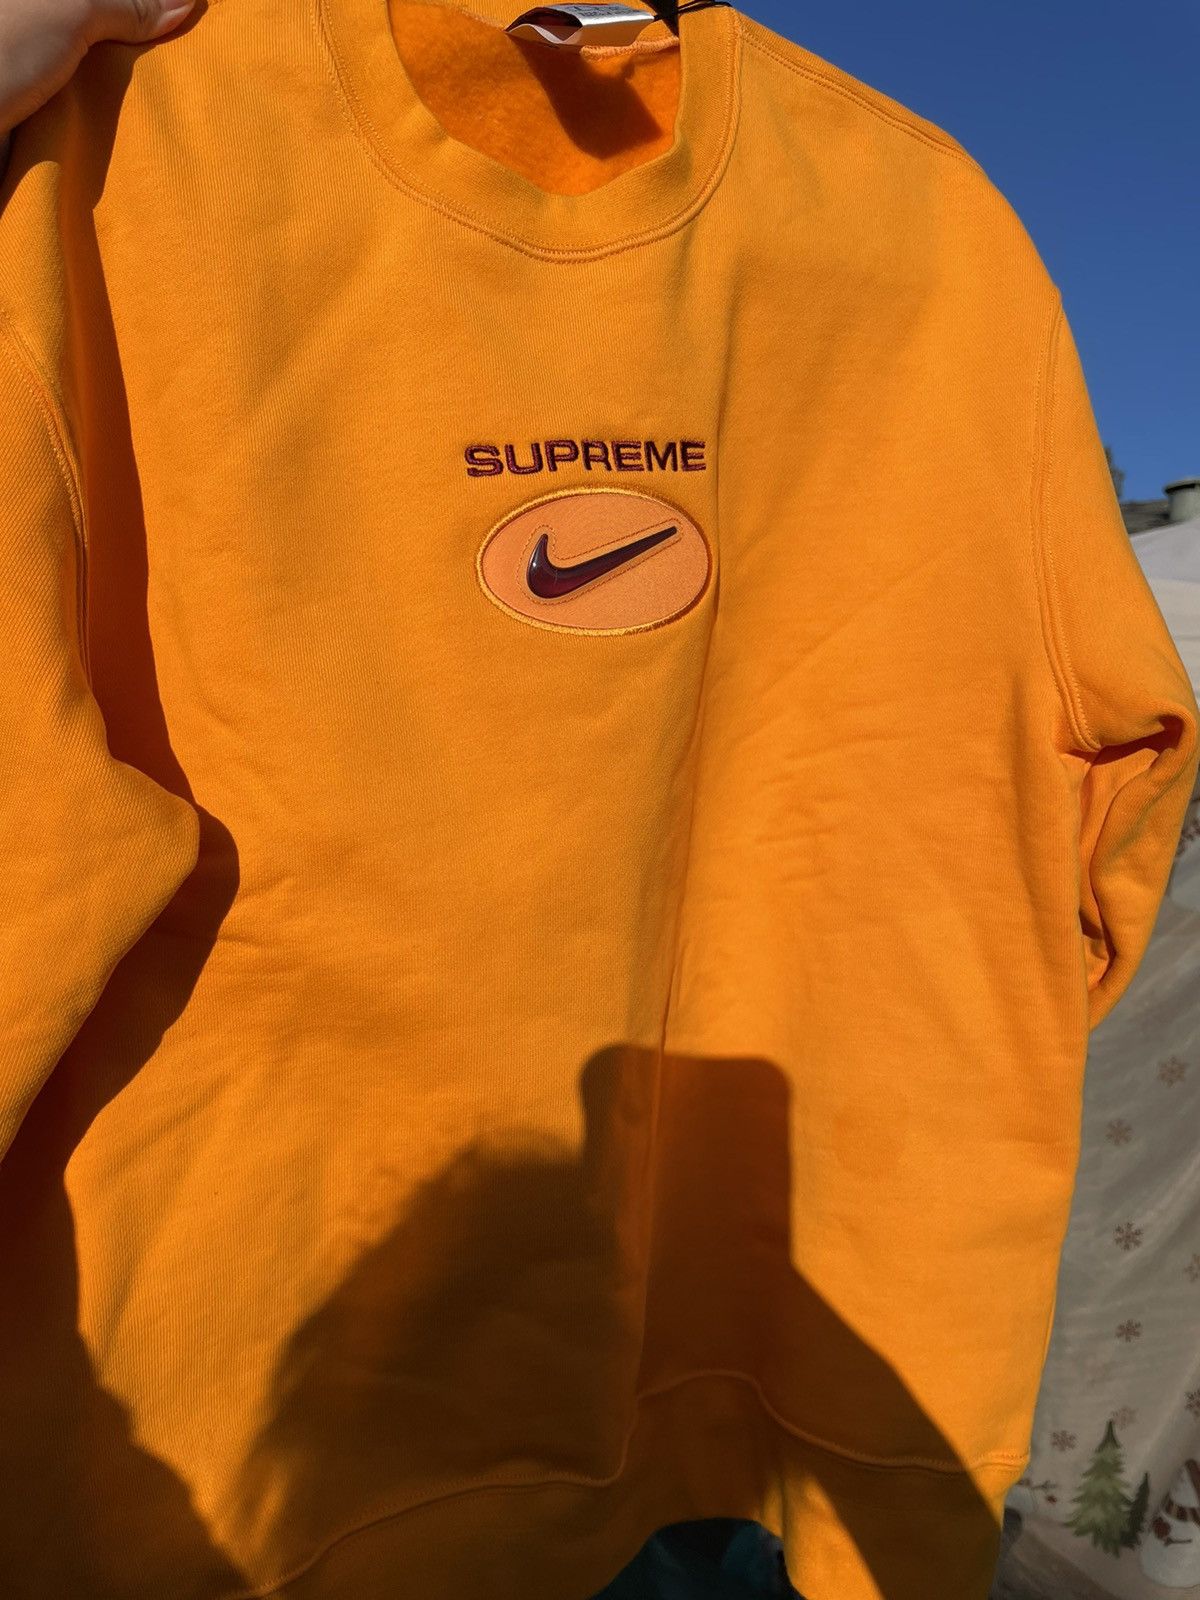 Supreme Supreme Nike Jewel Crewneck Orange | Grailed